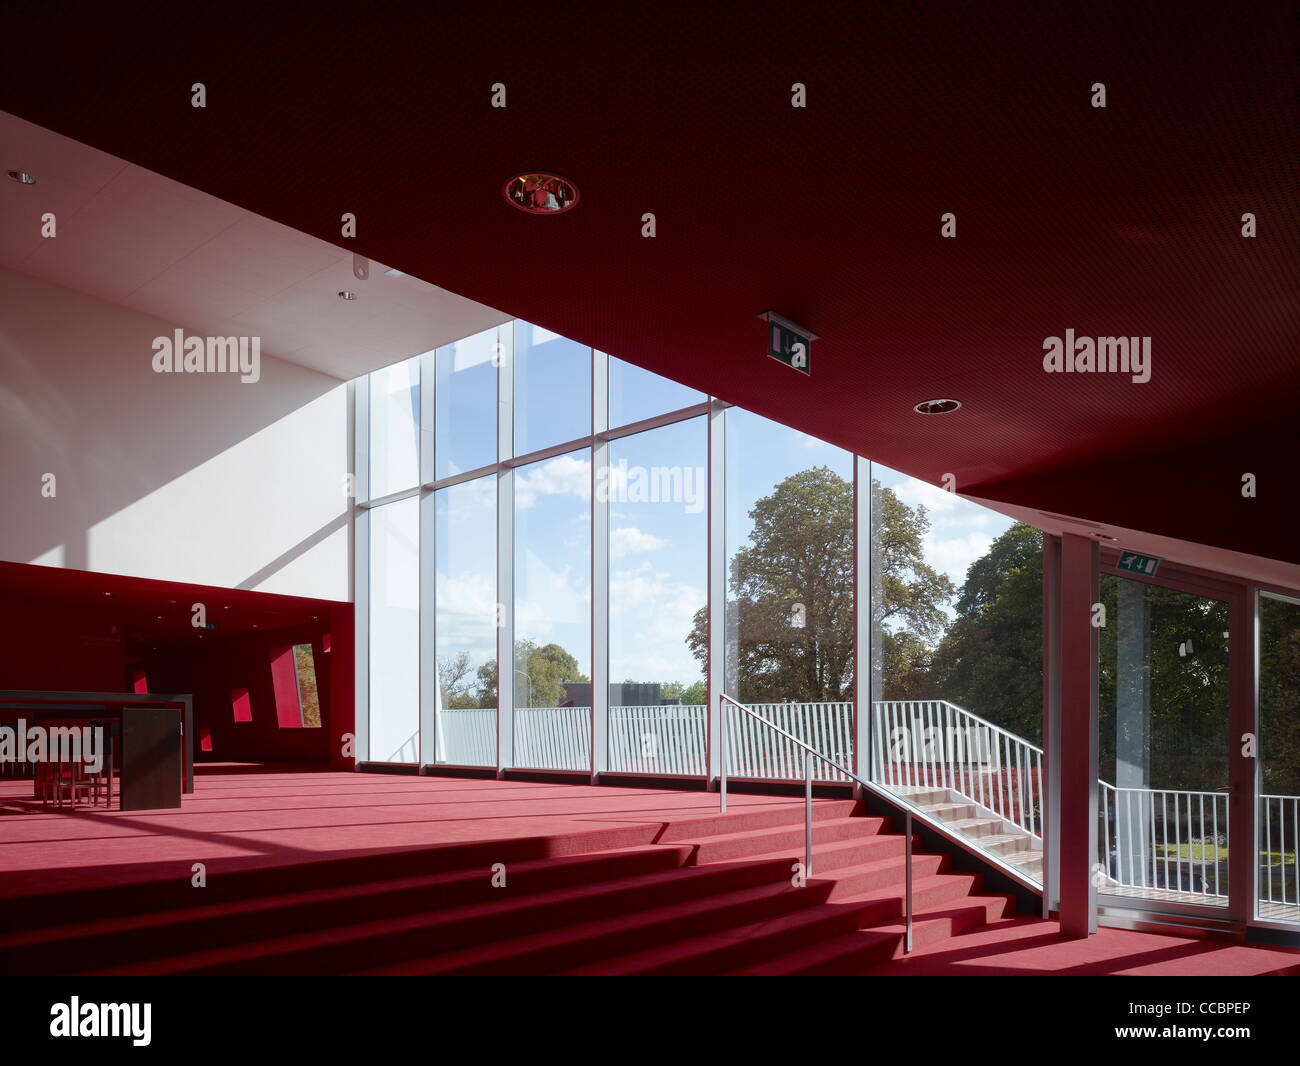 Amphion Theater, Doetinchem, Niederlande, 2010 Stockfoto